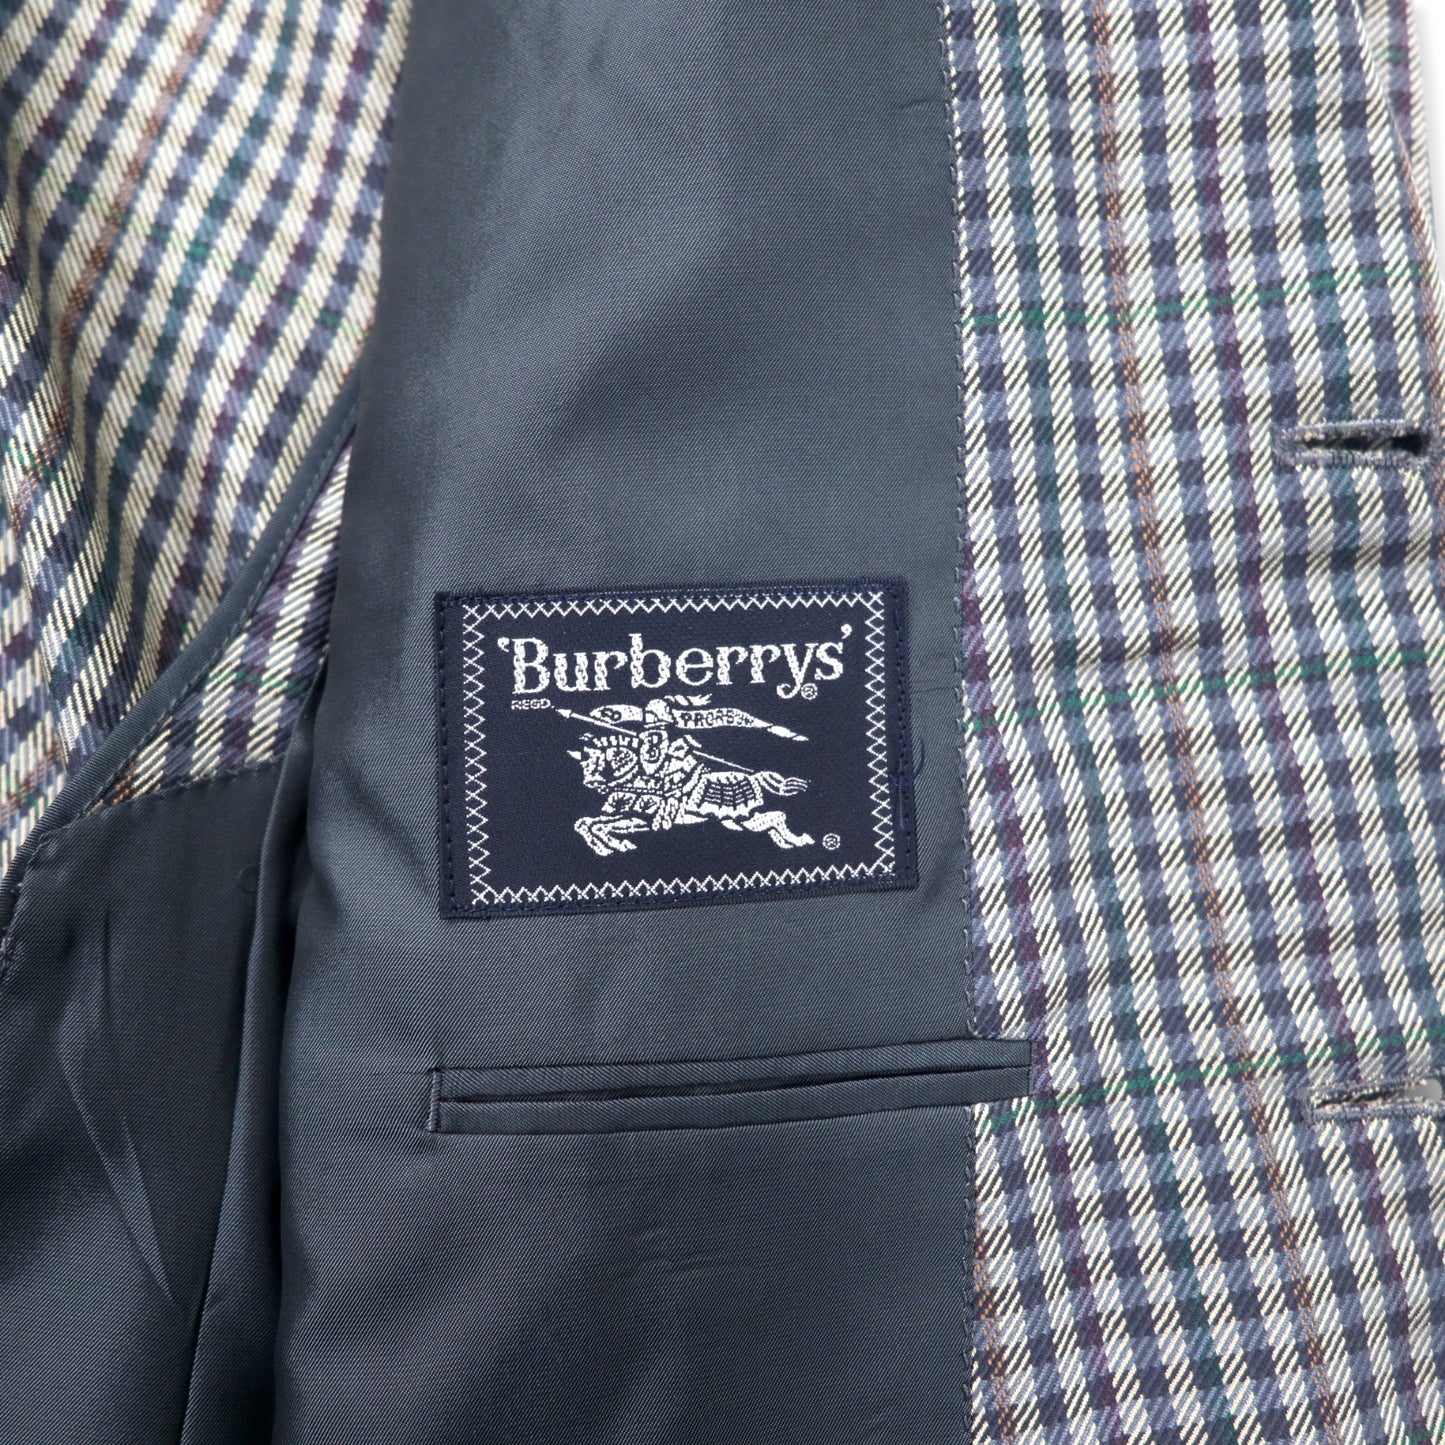 Burberrys オールド 2B テーラードジャケット 98-88-175 AB6 ベージュ ネイビー チェック ウール シルク混 日本製